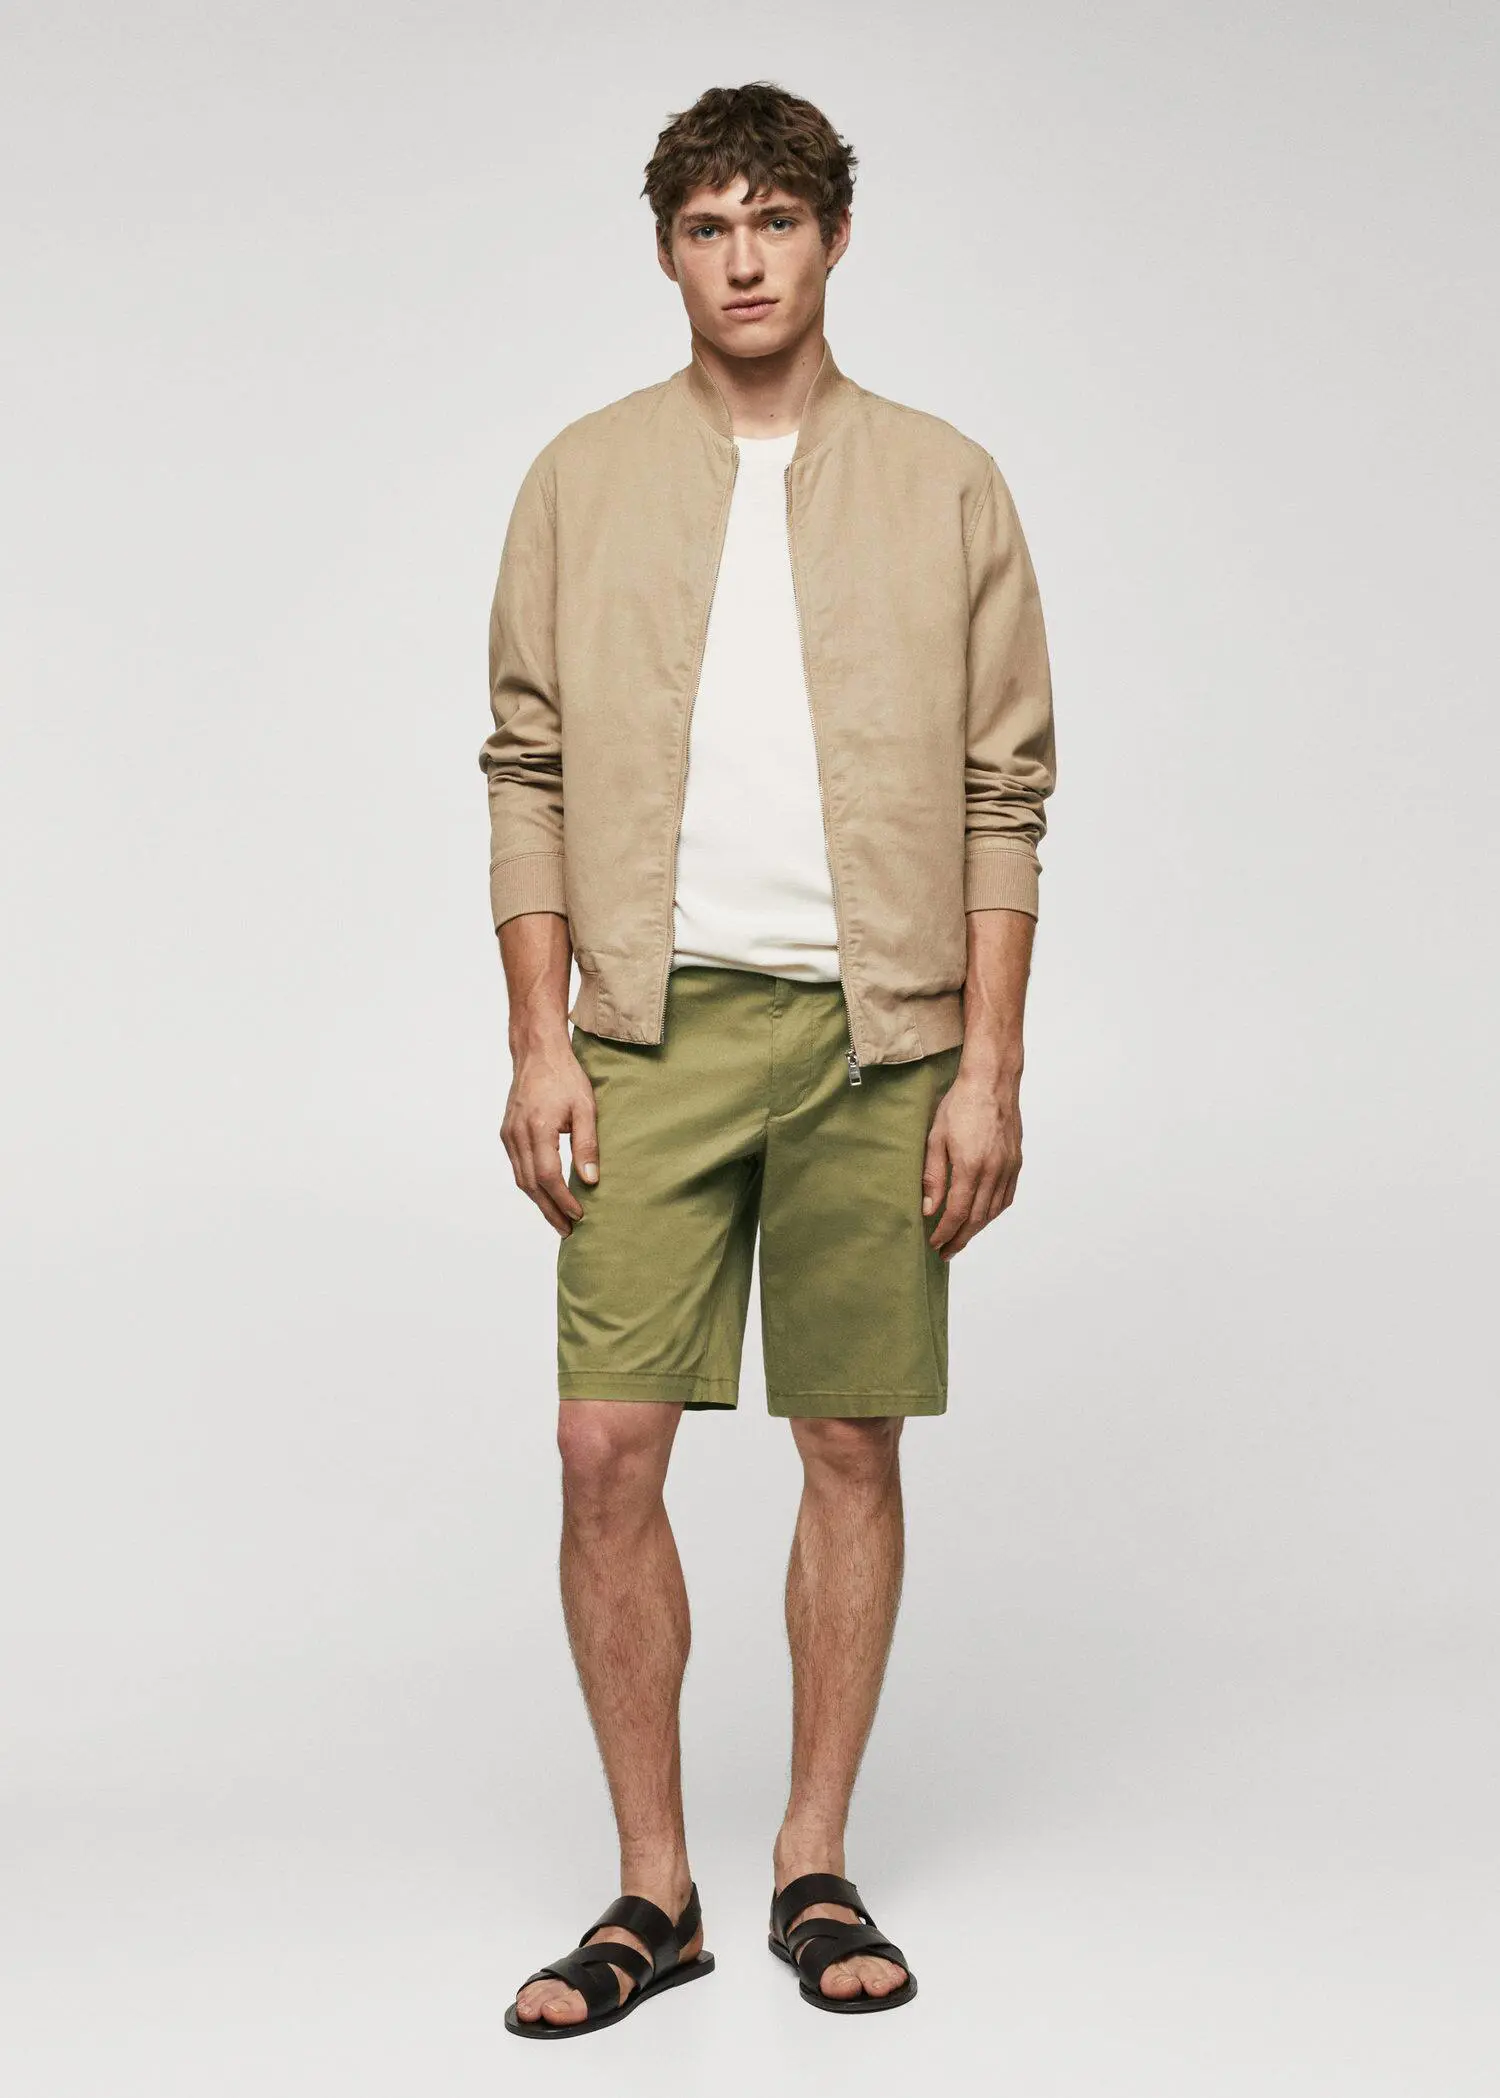 Mango Chino Bermuda shorts. a man in a tan jacket and green shorts. 